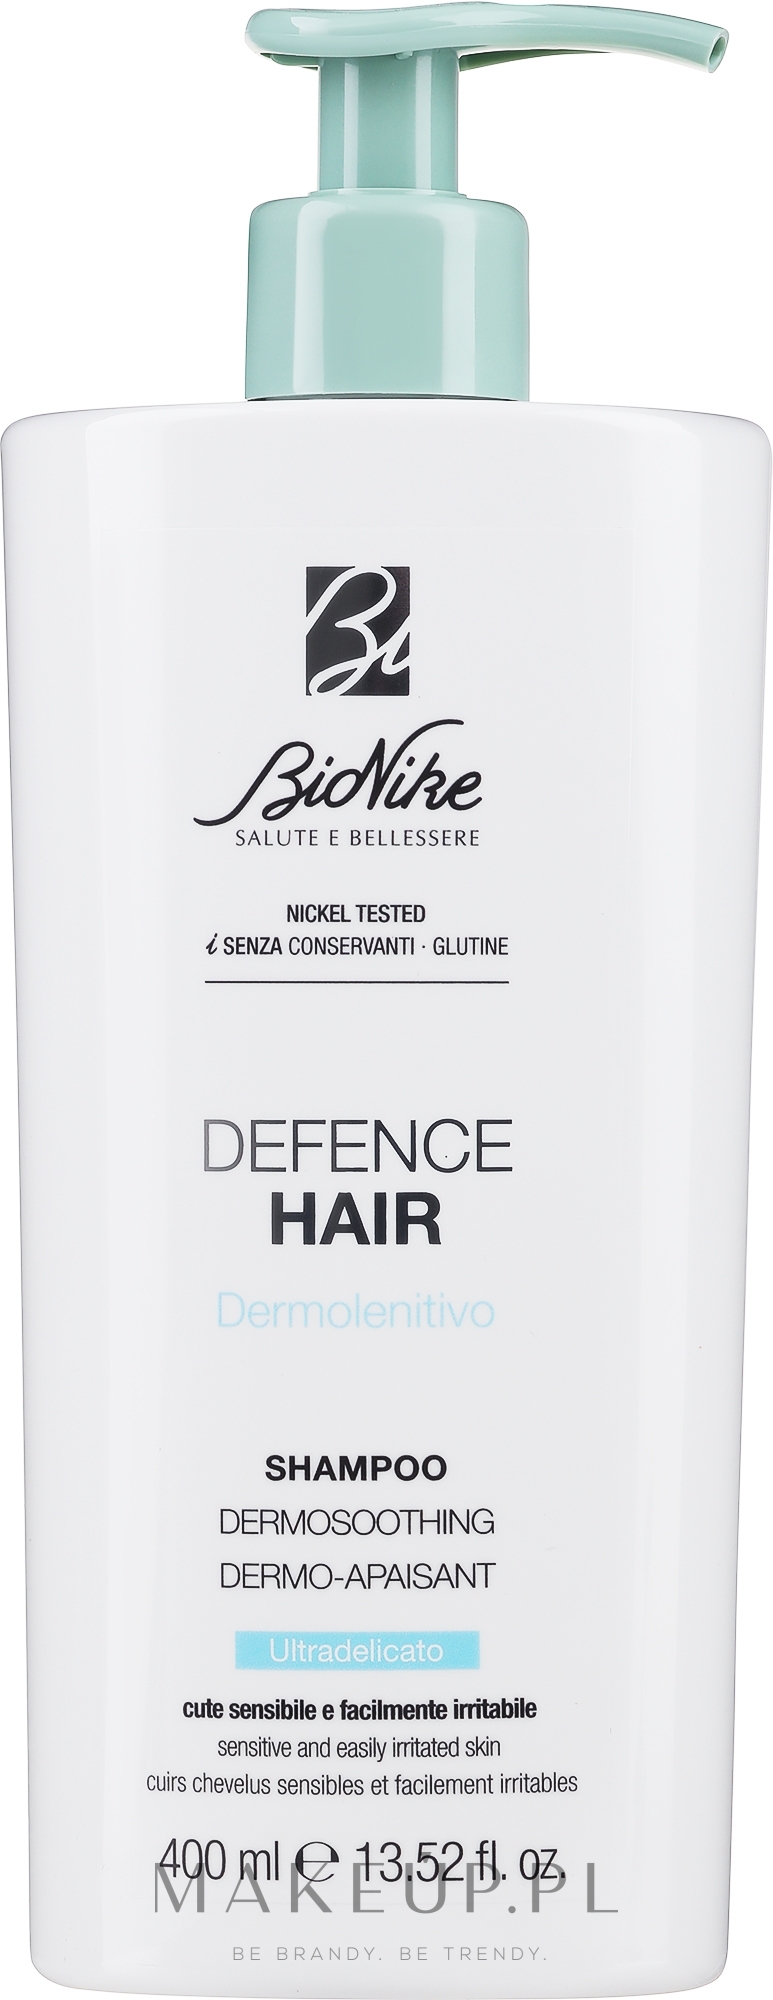 Delikatny szampon do włosów - BioNike Defence Hair Shampoo Dermosoothing  — Zdjęcie 400 ml